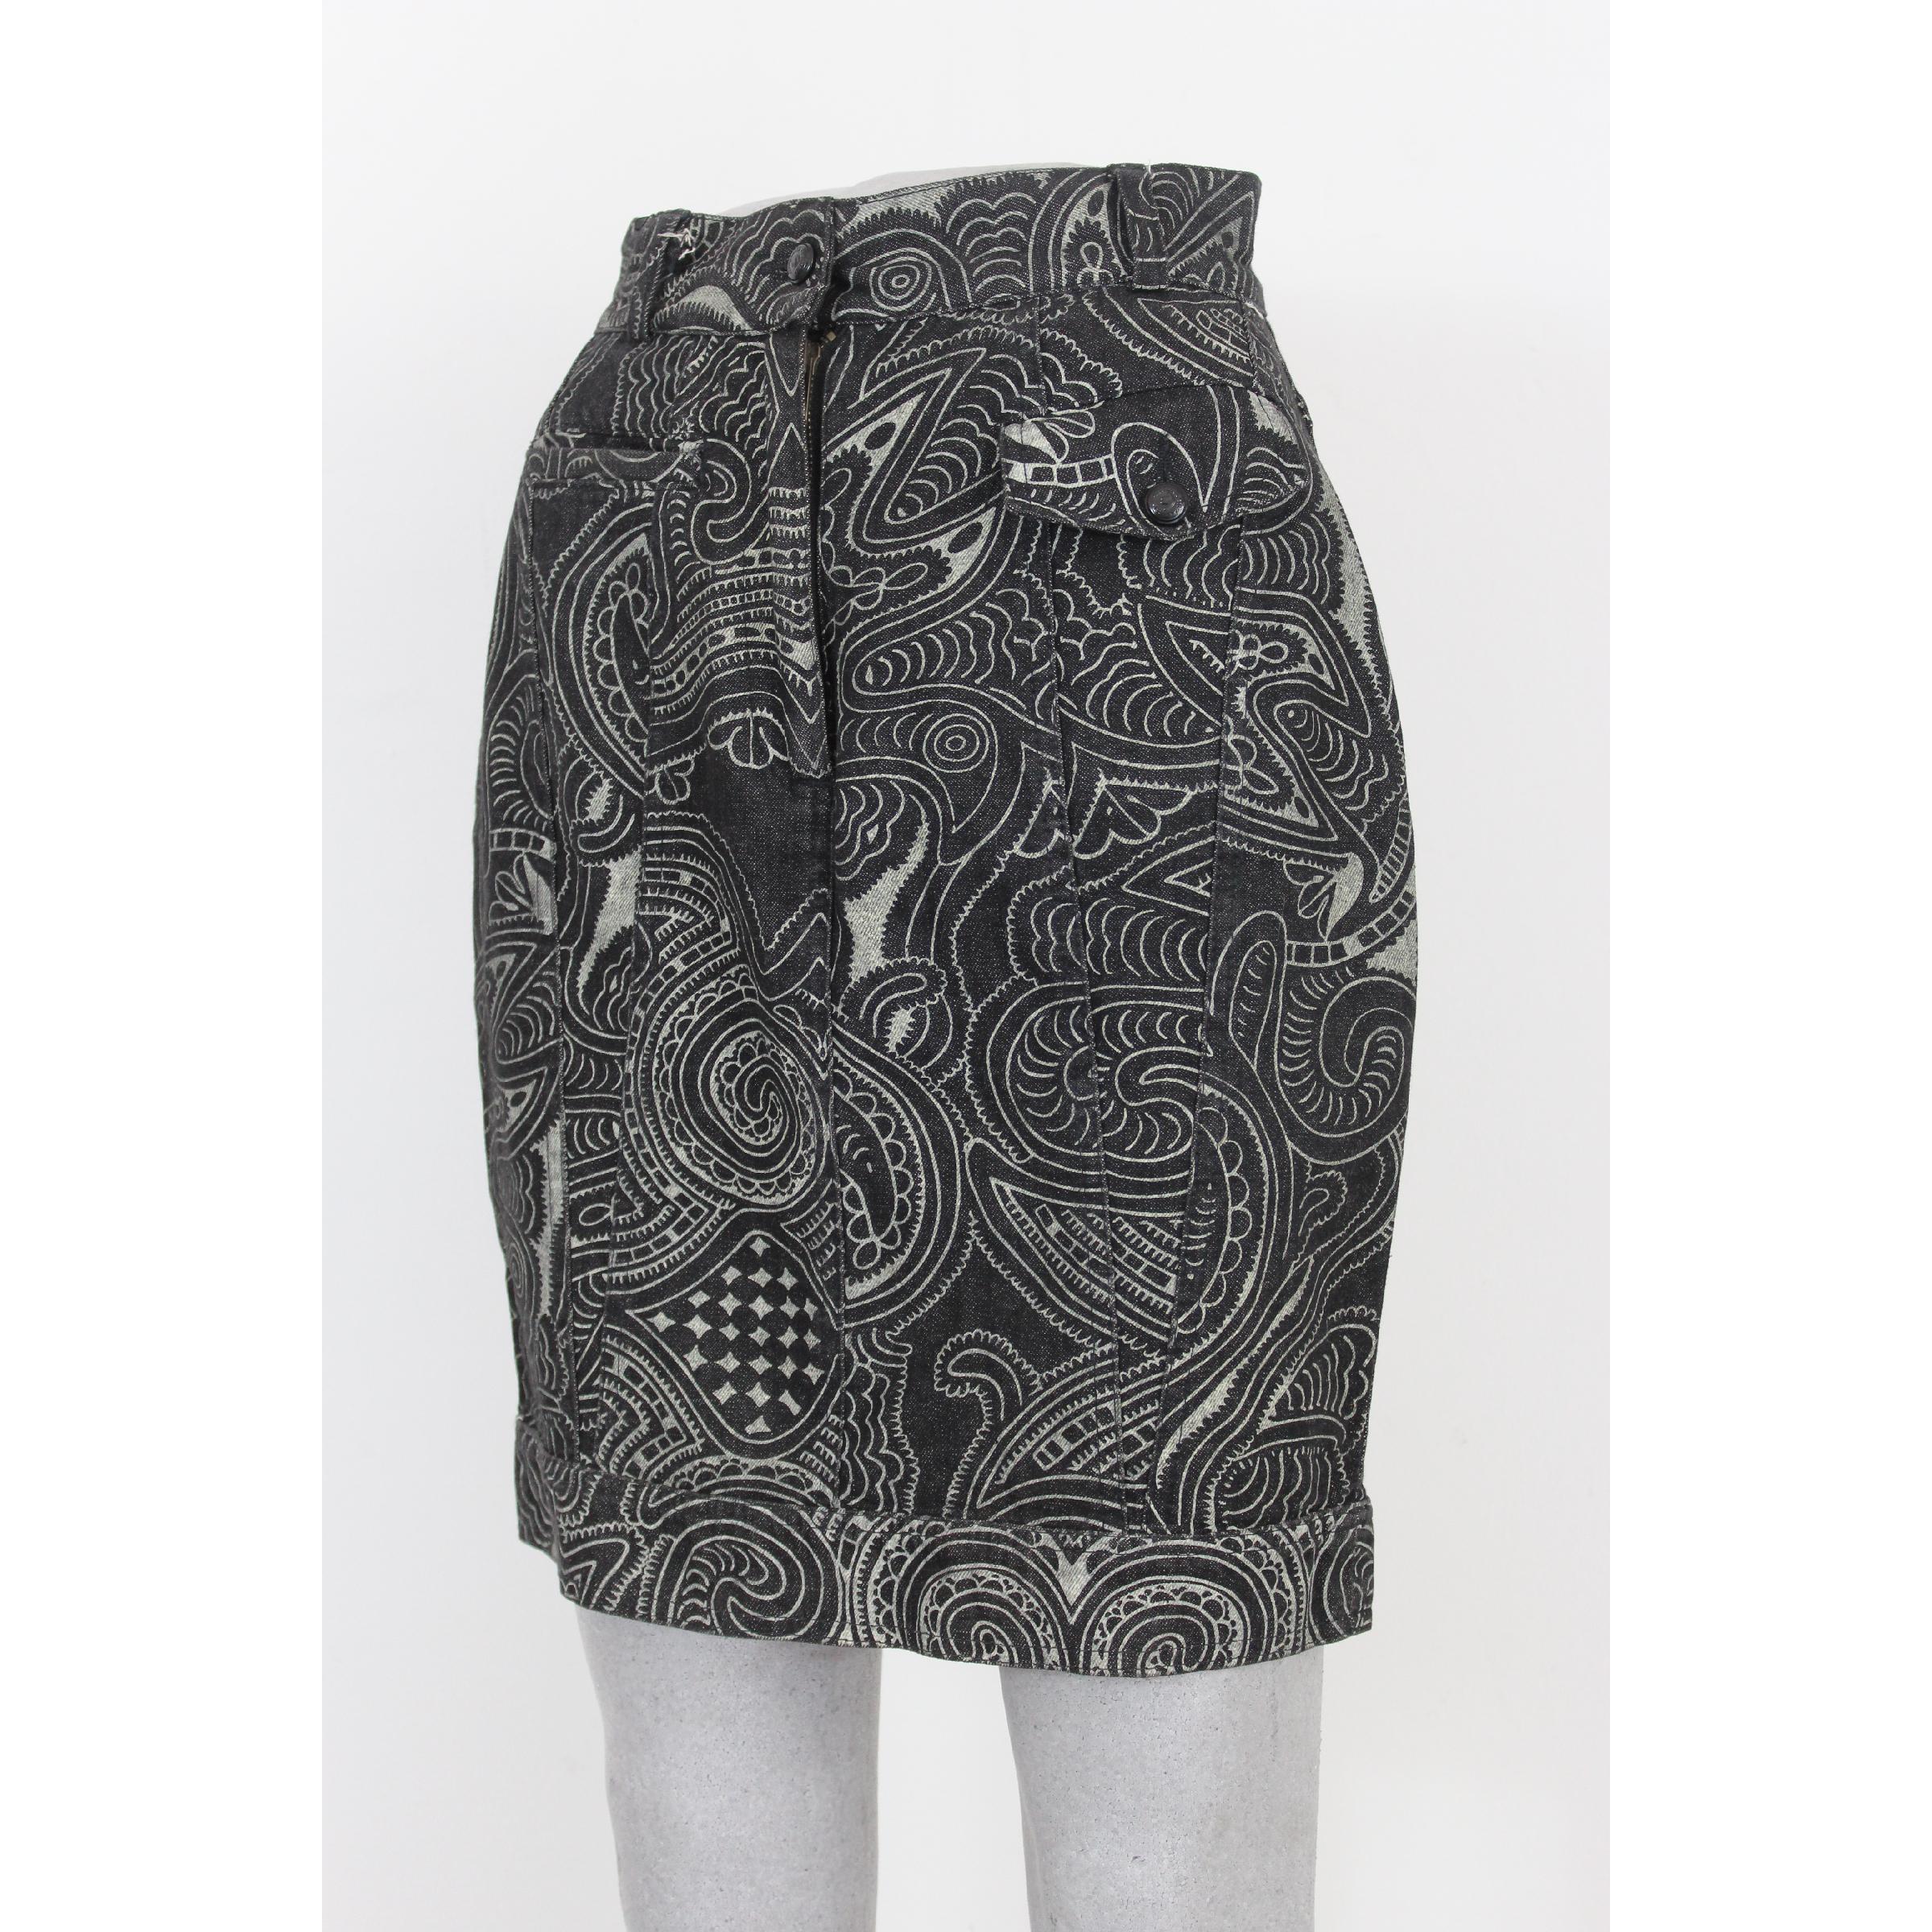 Moschino Vintage kurzer Rock. Schwarze Jeans mit weißem Blumenmuster, 100% Baumwolle. 80s. Hergestellt in Italien. Ausgezeichneter Vintage-Zustand

Größe: 42 It 8 Us 10 Uk

Taille: 32 cm
Länge: 53 cm